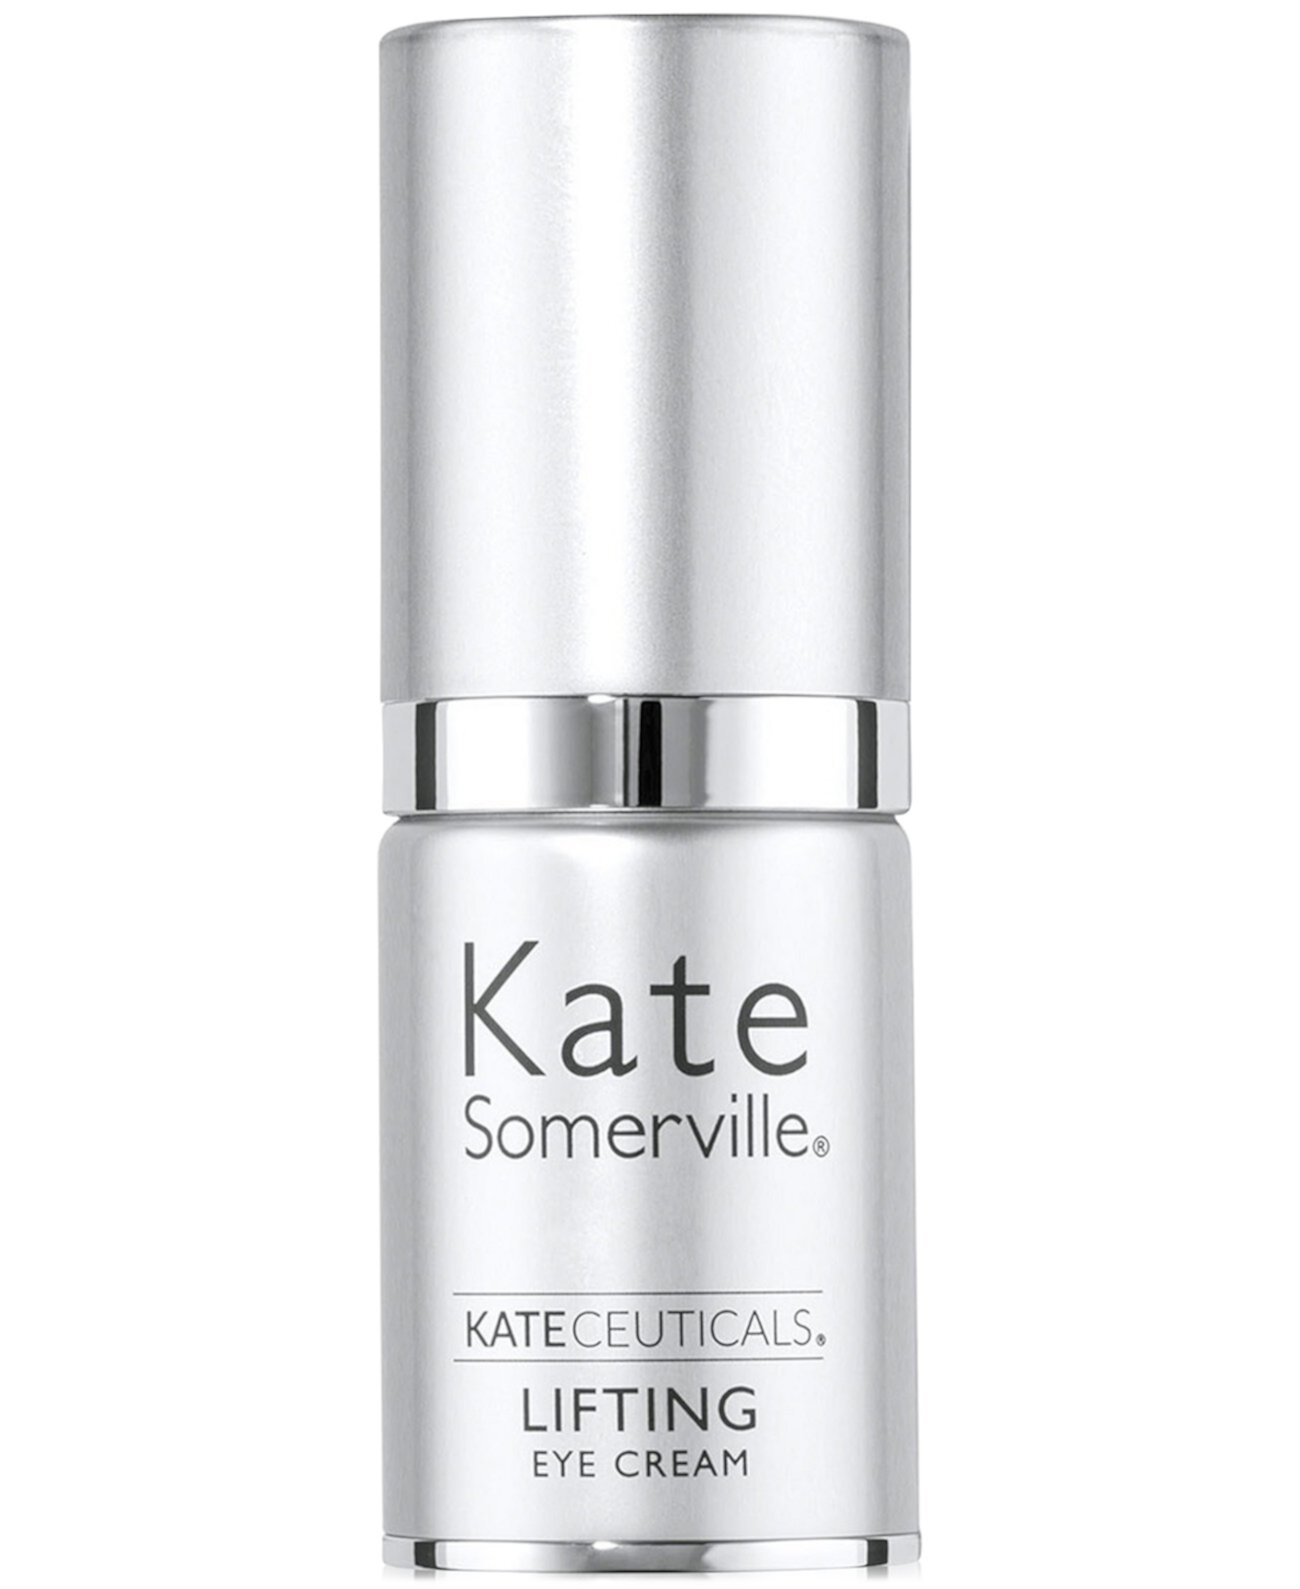 KateCeuticals Lifting Eye Cream, 0.5 oz. Kate Somerville